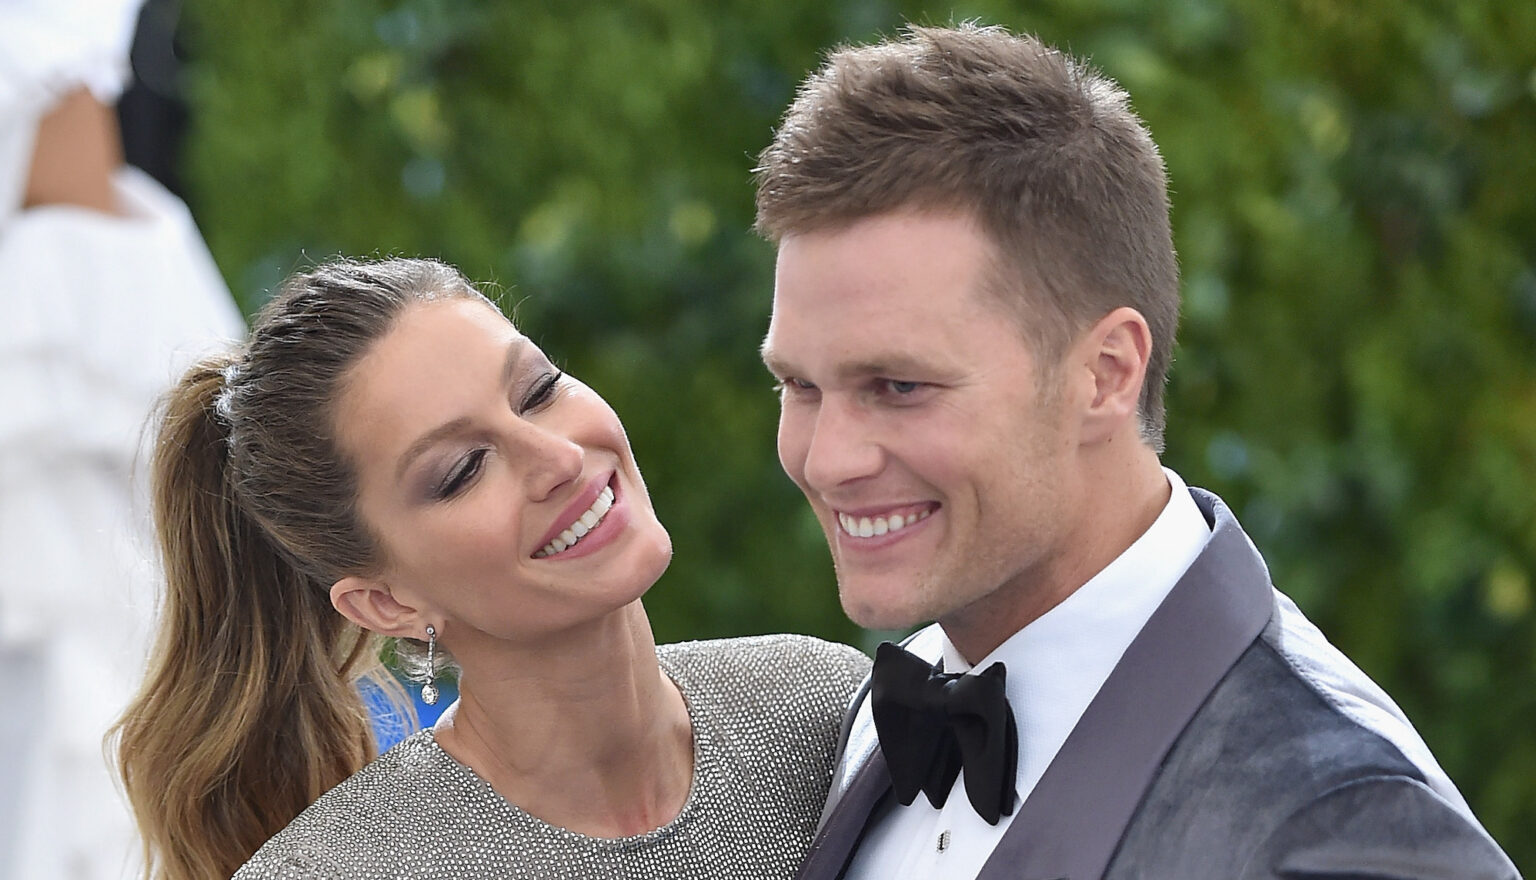 Tom Brady And Gisele Bundchen S Prenup Leaks After Divorce